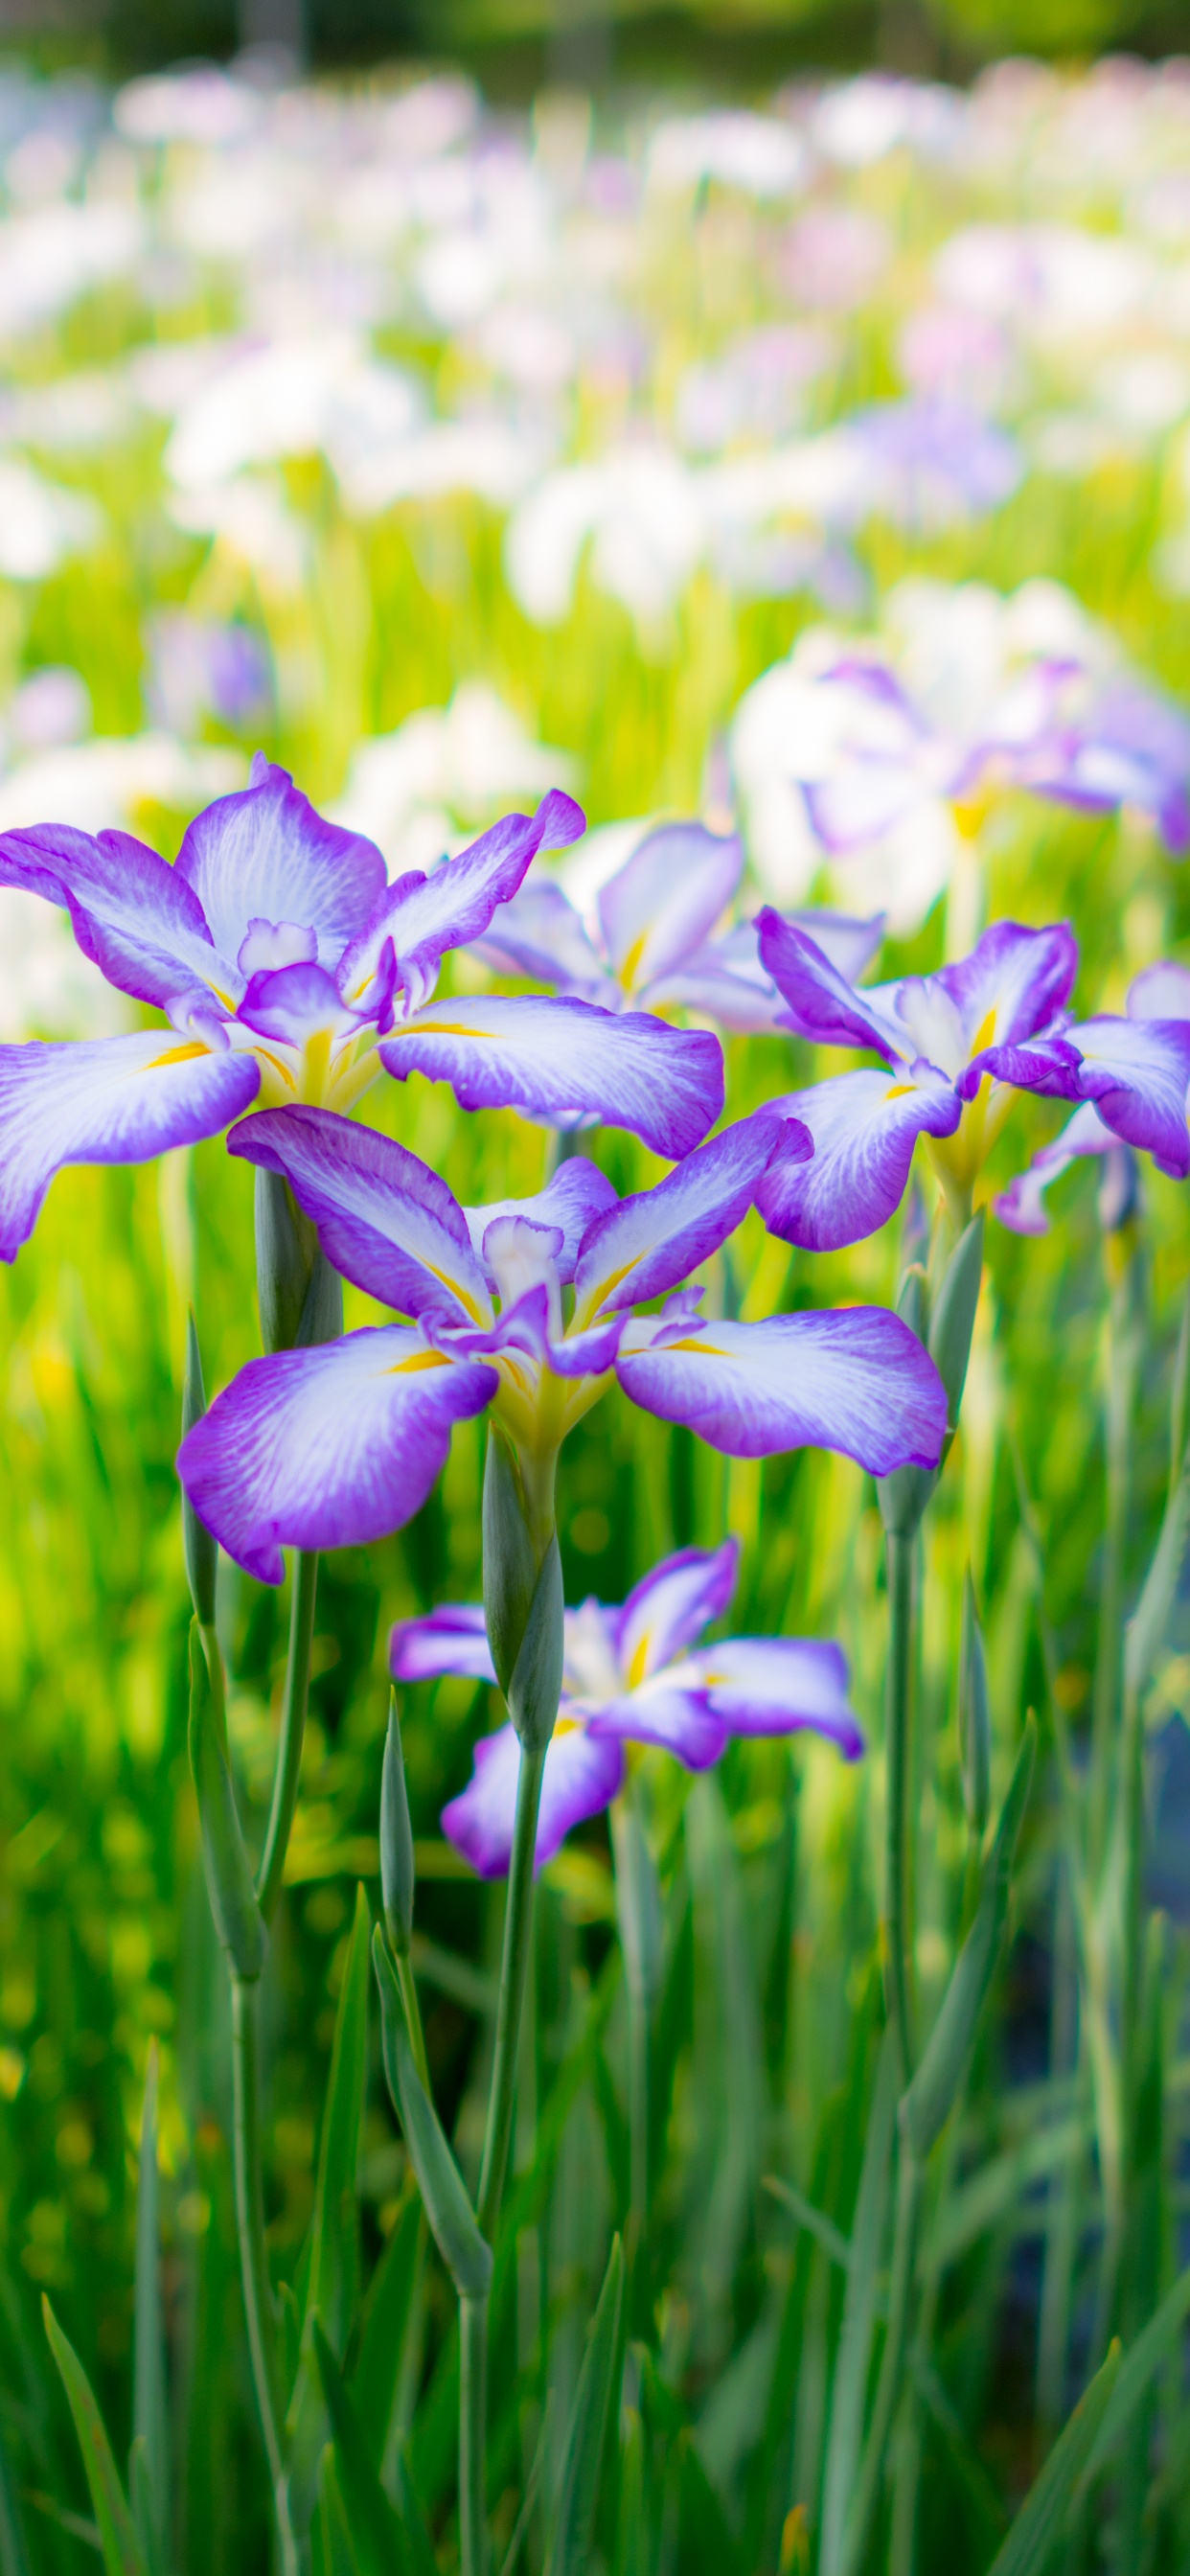 Purple and White Flowers in Tilt Shift Lens. Wallpaper in 1242x2688 Resolution